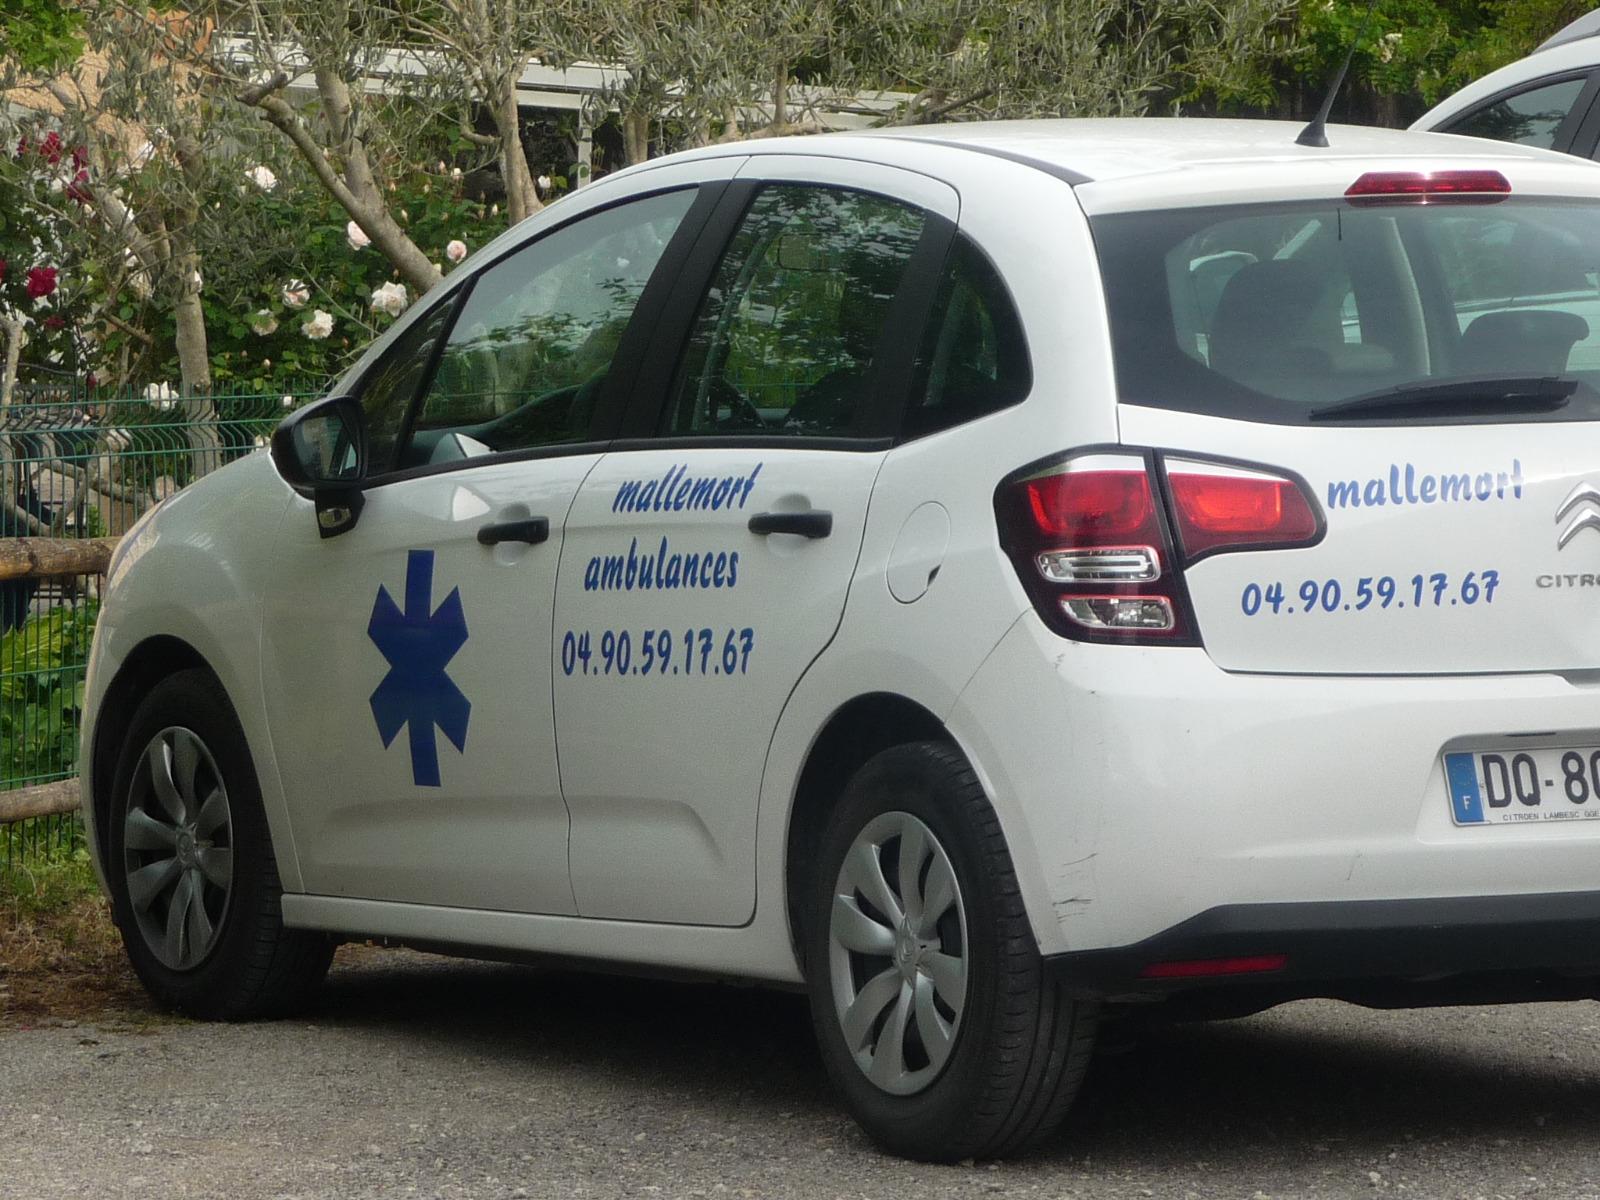 Taxis et ambulances à Mallemort dans les Bouches-du-Rhône (13)